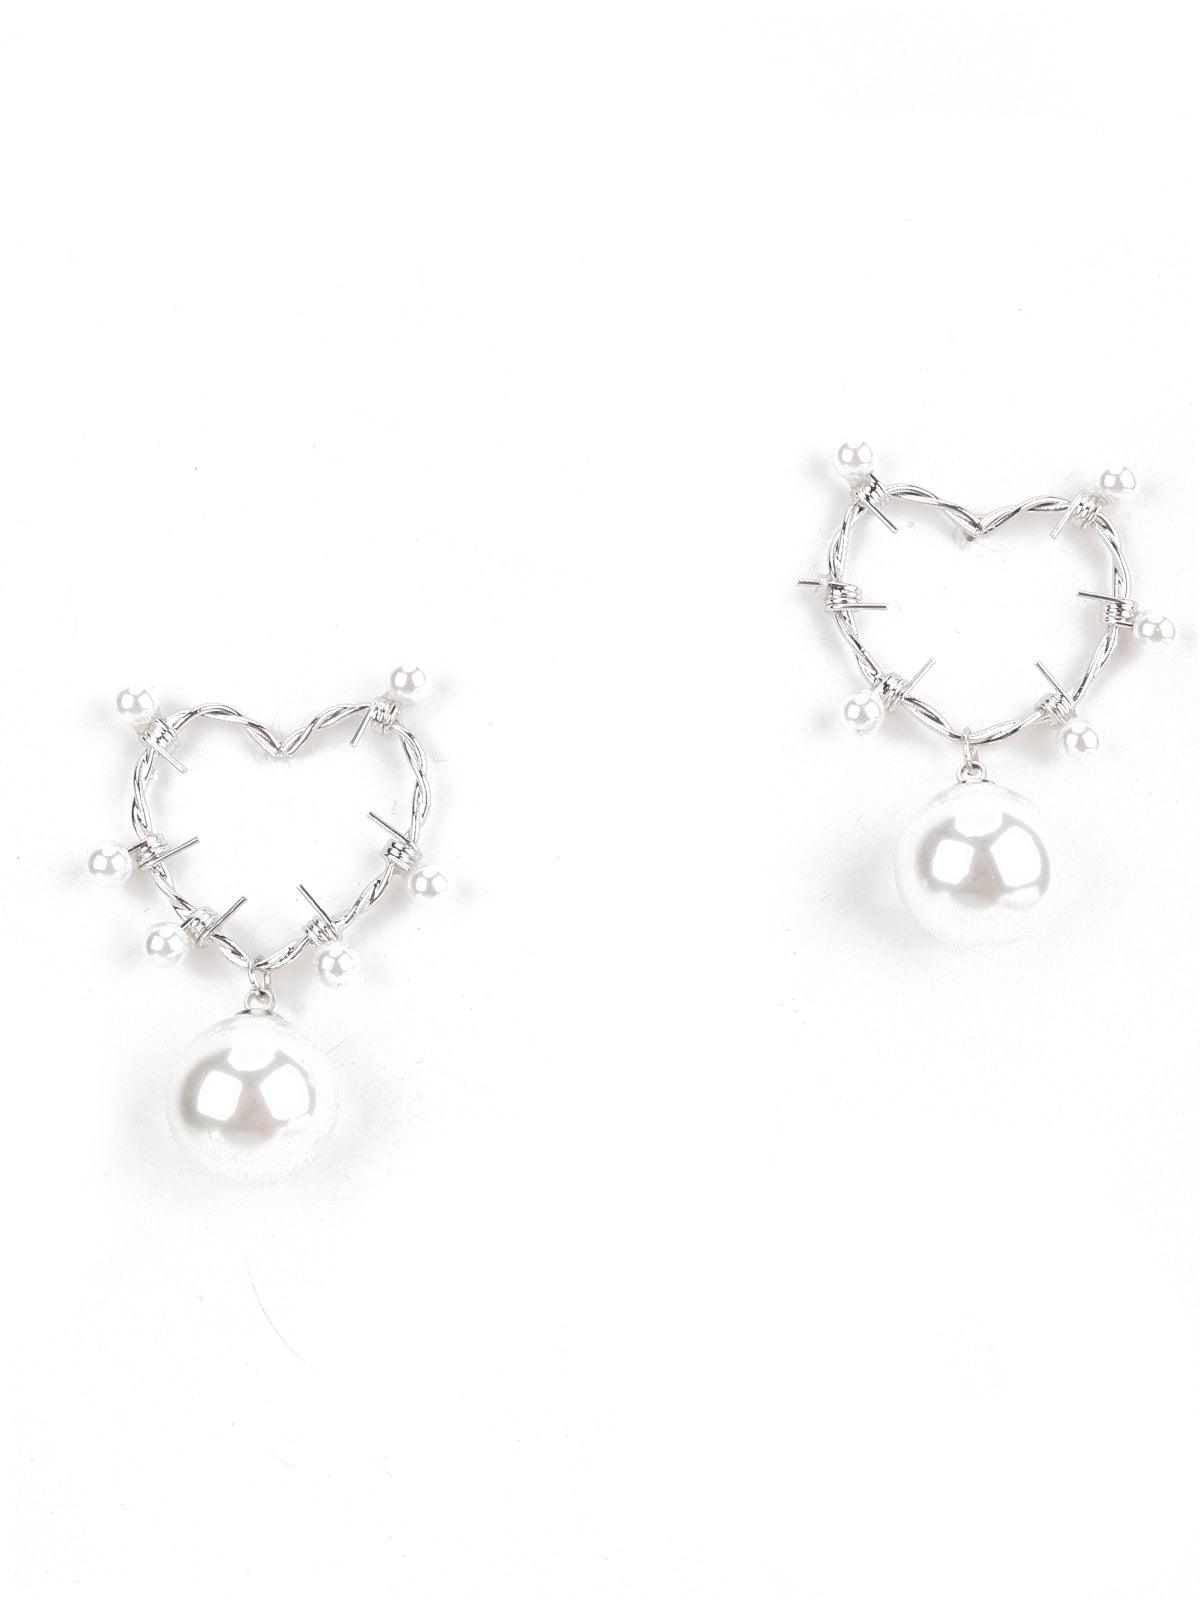 Silver Tone Heart Shape Dangle Earrings - Odette